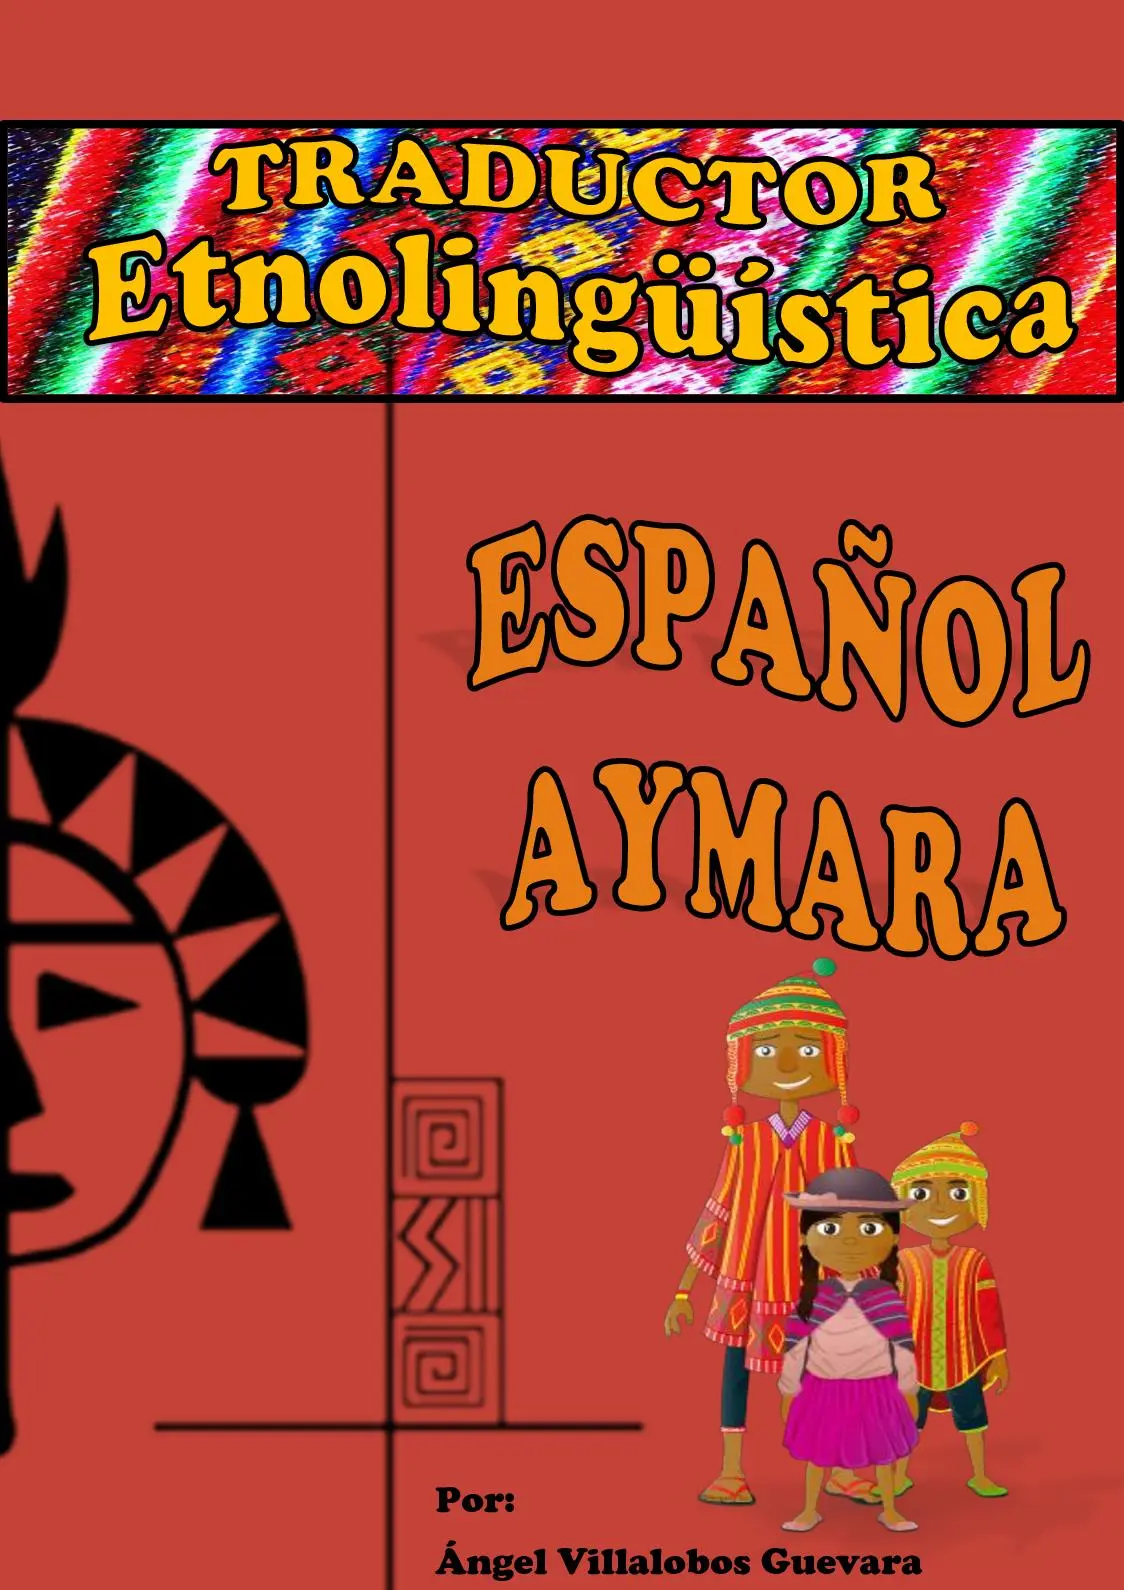 traduccion en aymara de la palabra inteligente - Qué quiere decir Anisiñani en español